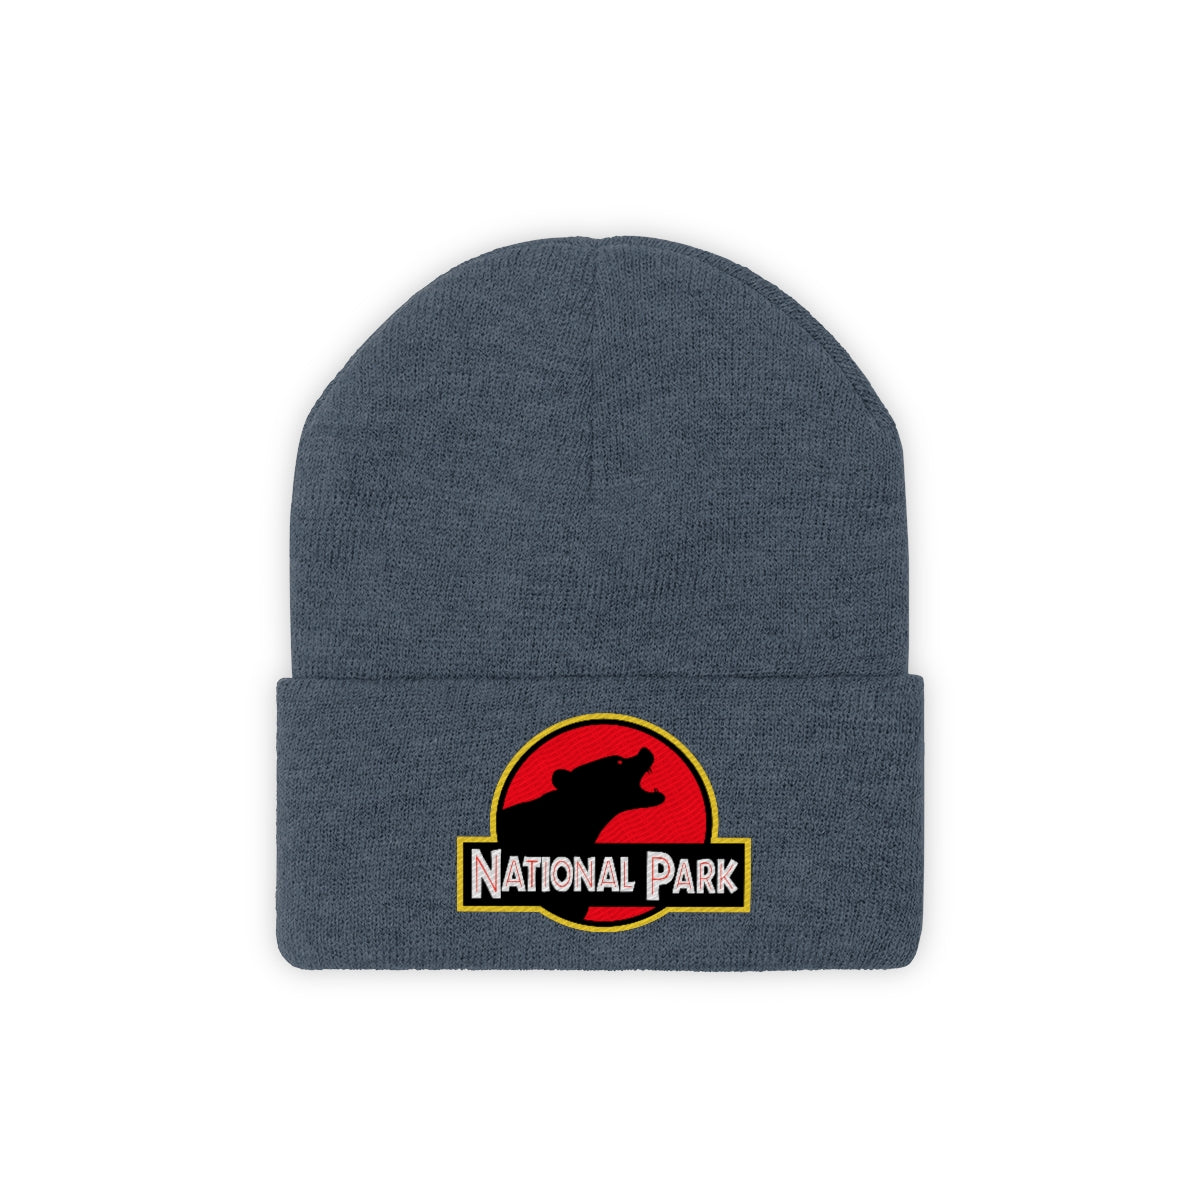 Bear National Park Hat - Knit Beanie Sewn Parody Logo